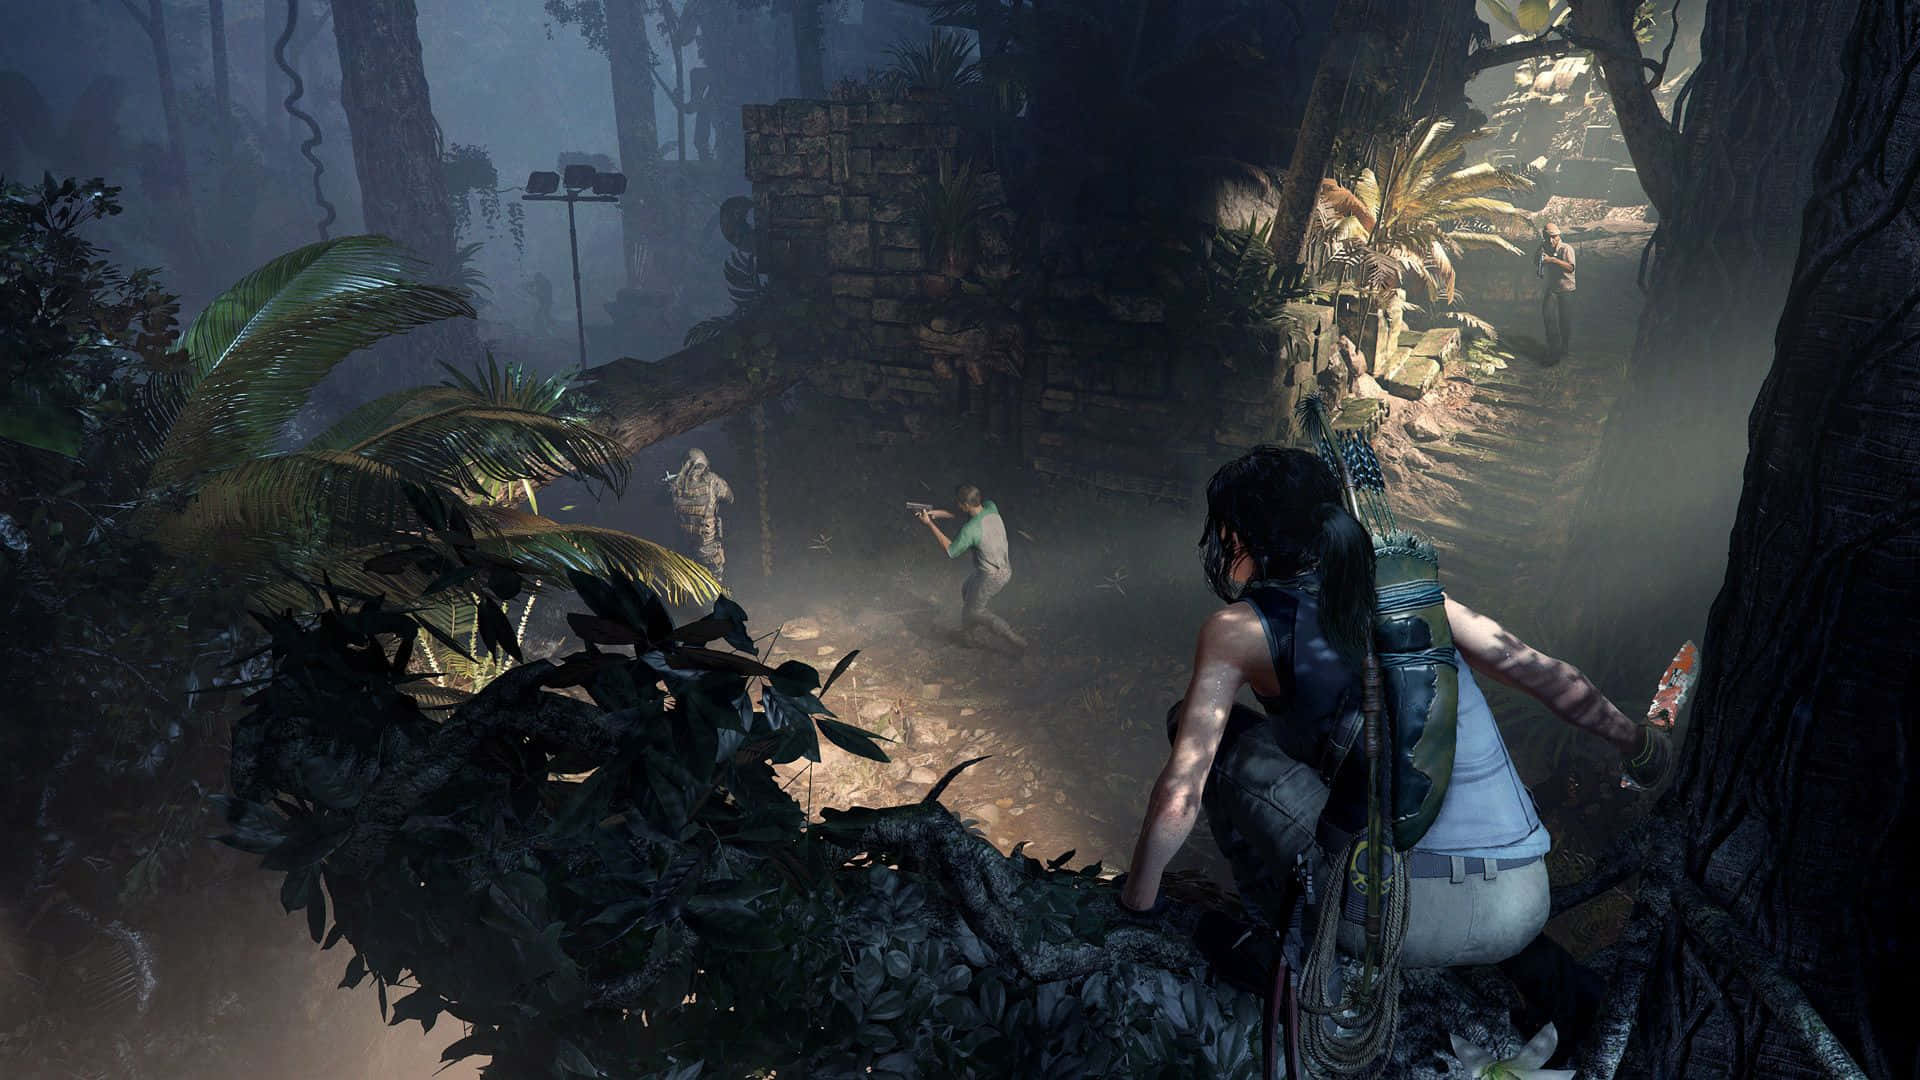 Ilmiglior Sfondo Di Shadow Of The Tomb Raider The Pillar